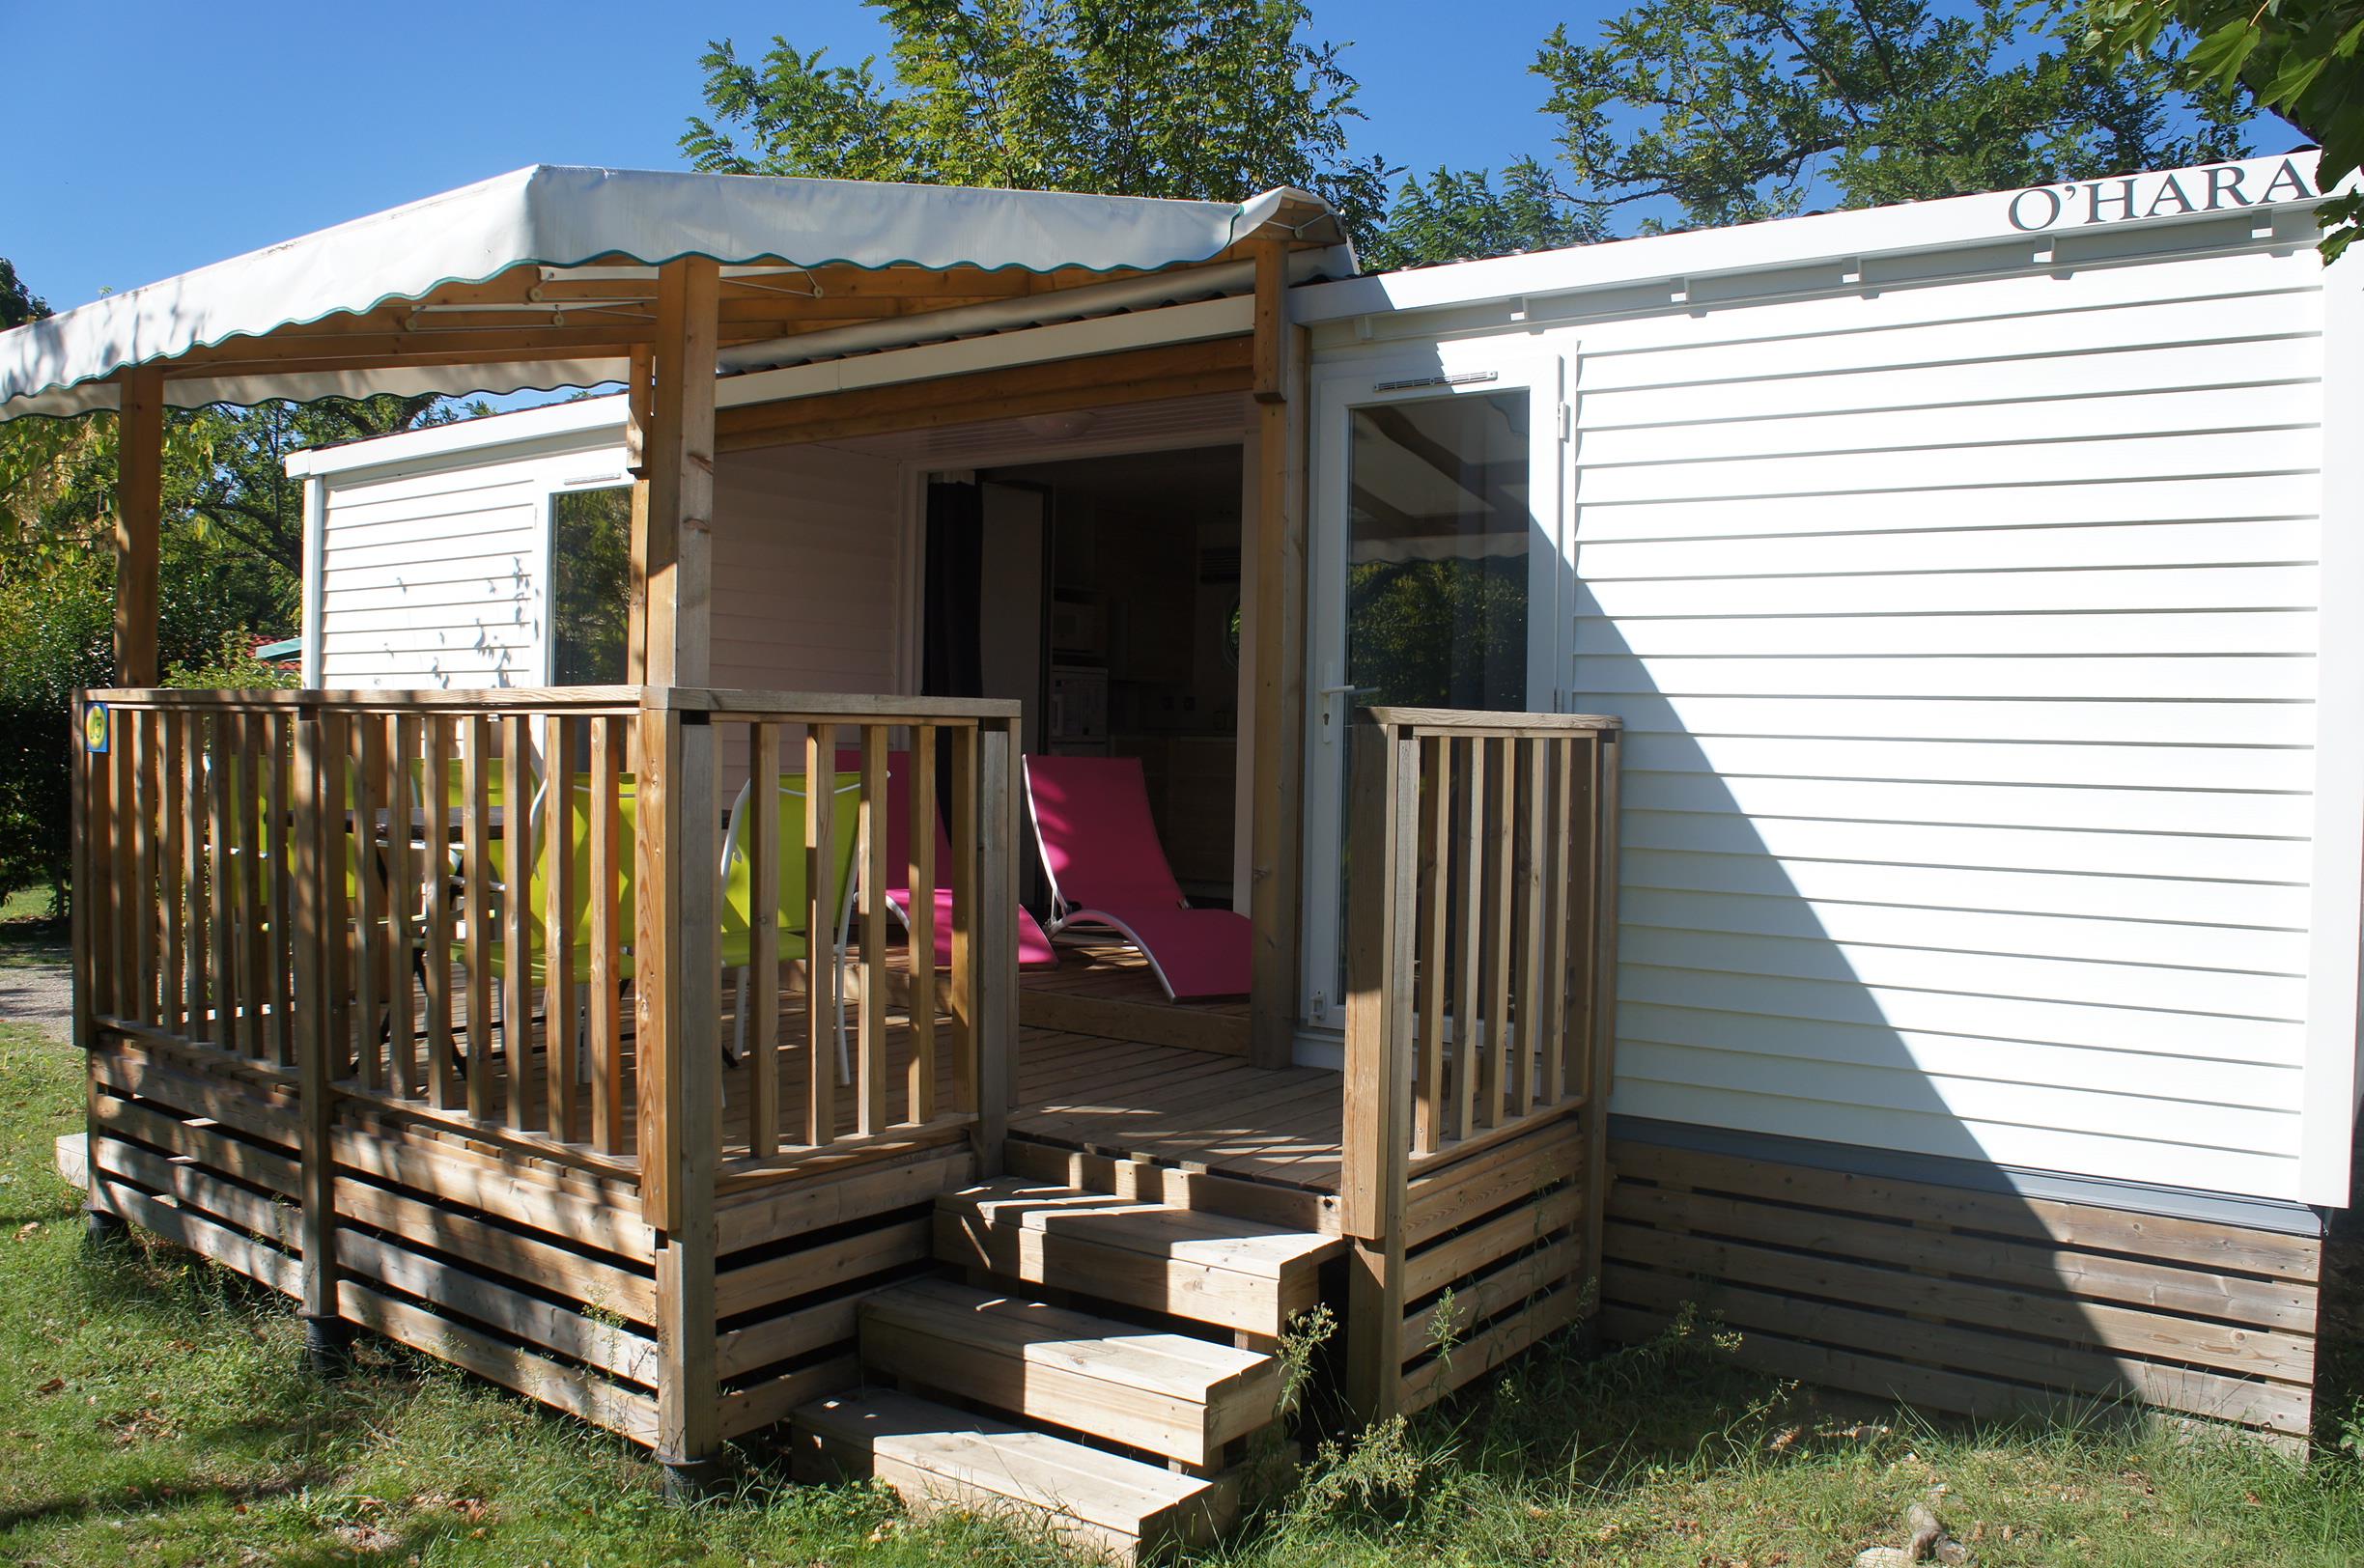 Mietunterkunft - Mobilheim Premium 32M² 2 Zimmer + 2 Badezimmer + Bett 160 + 2 Tv + Klimaanlage - Flower Camping Le Riviera